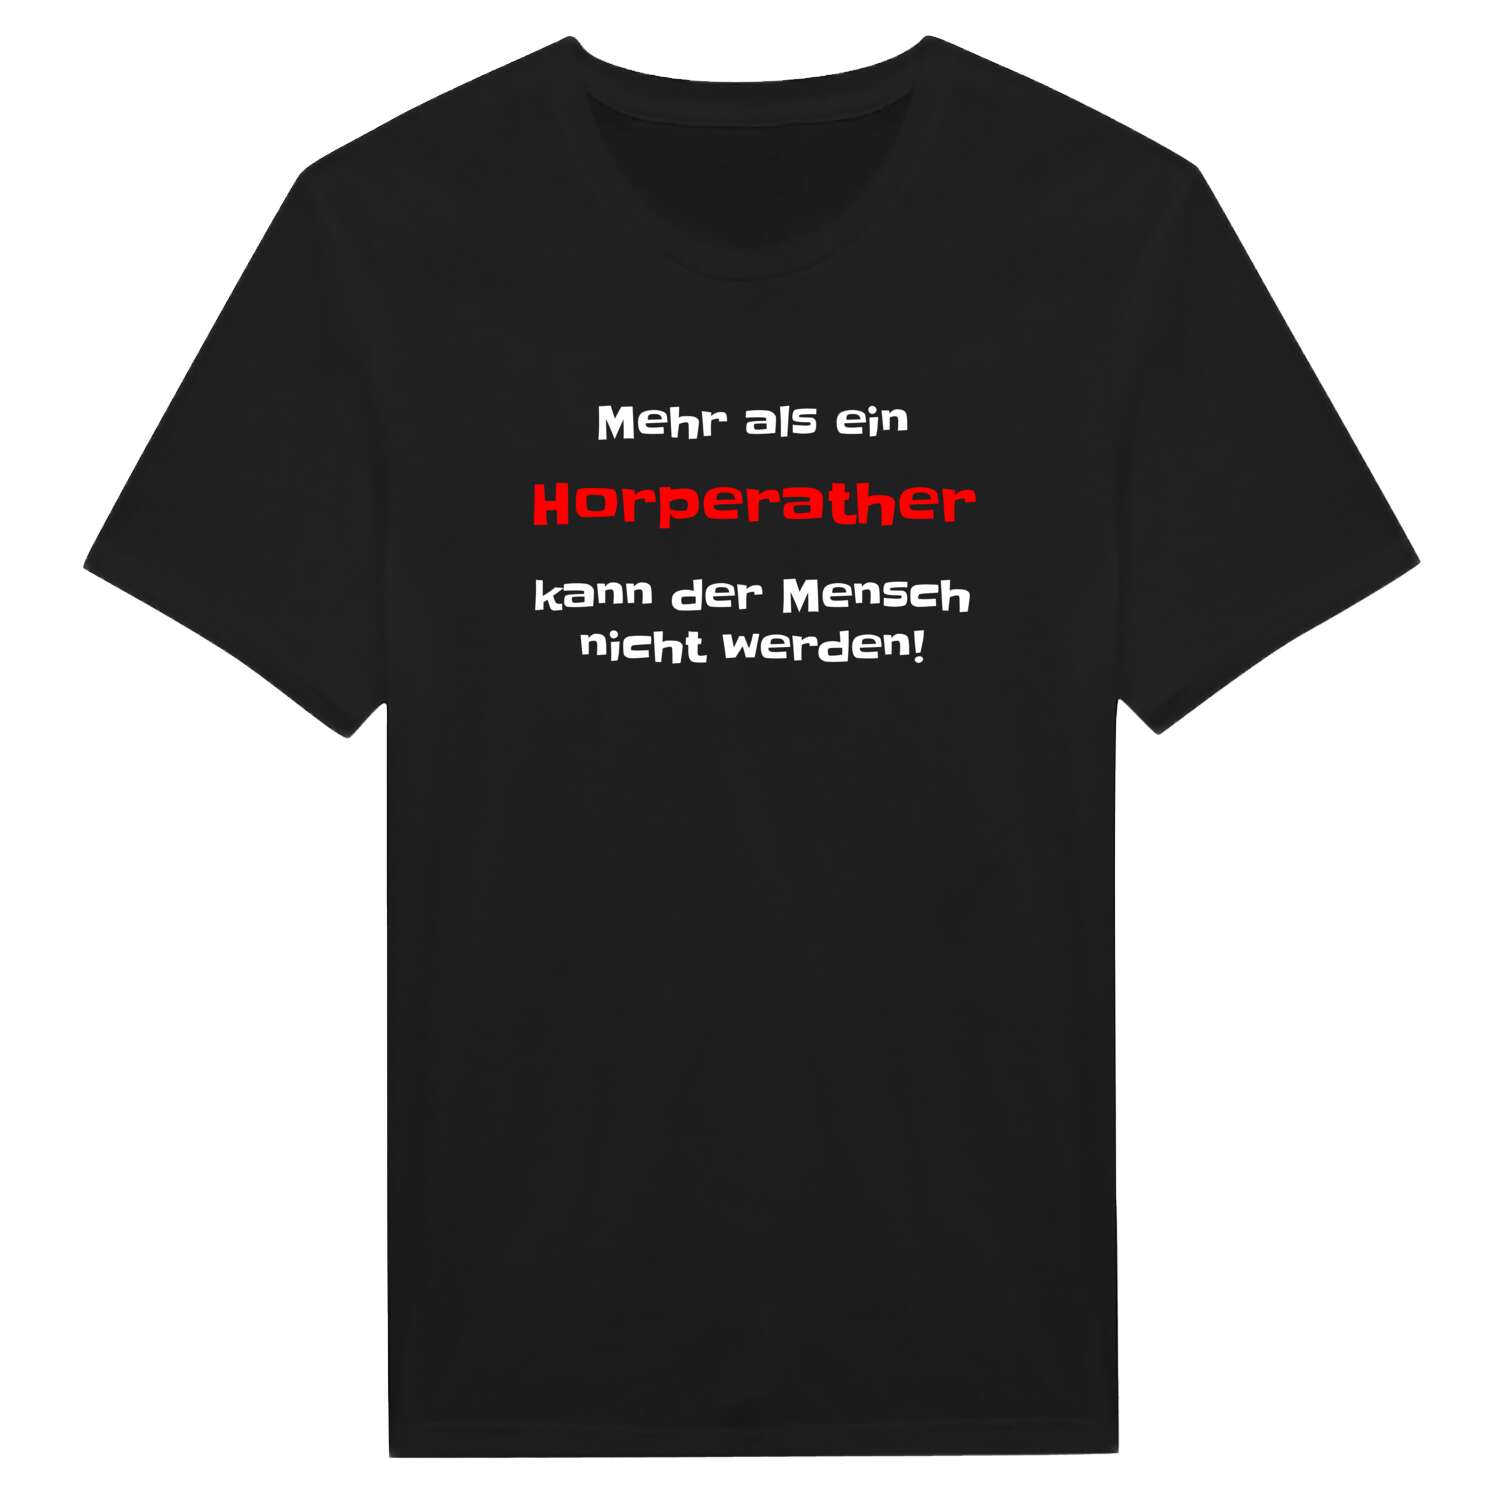 Horperath T-Shirt »Mehr als ein«